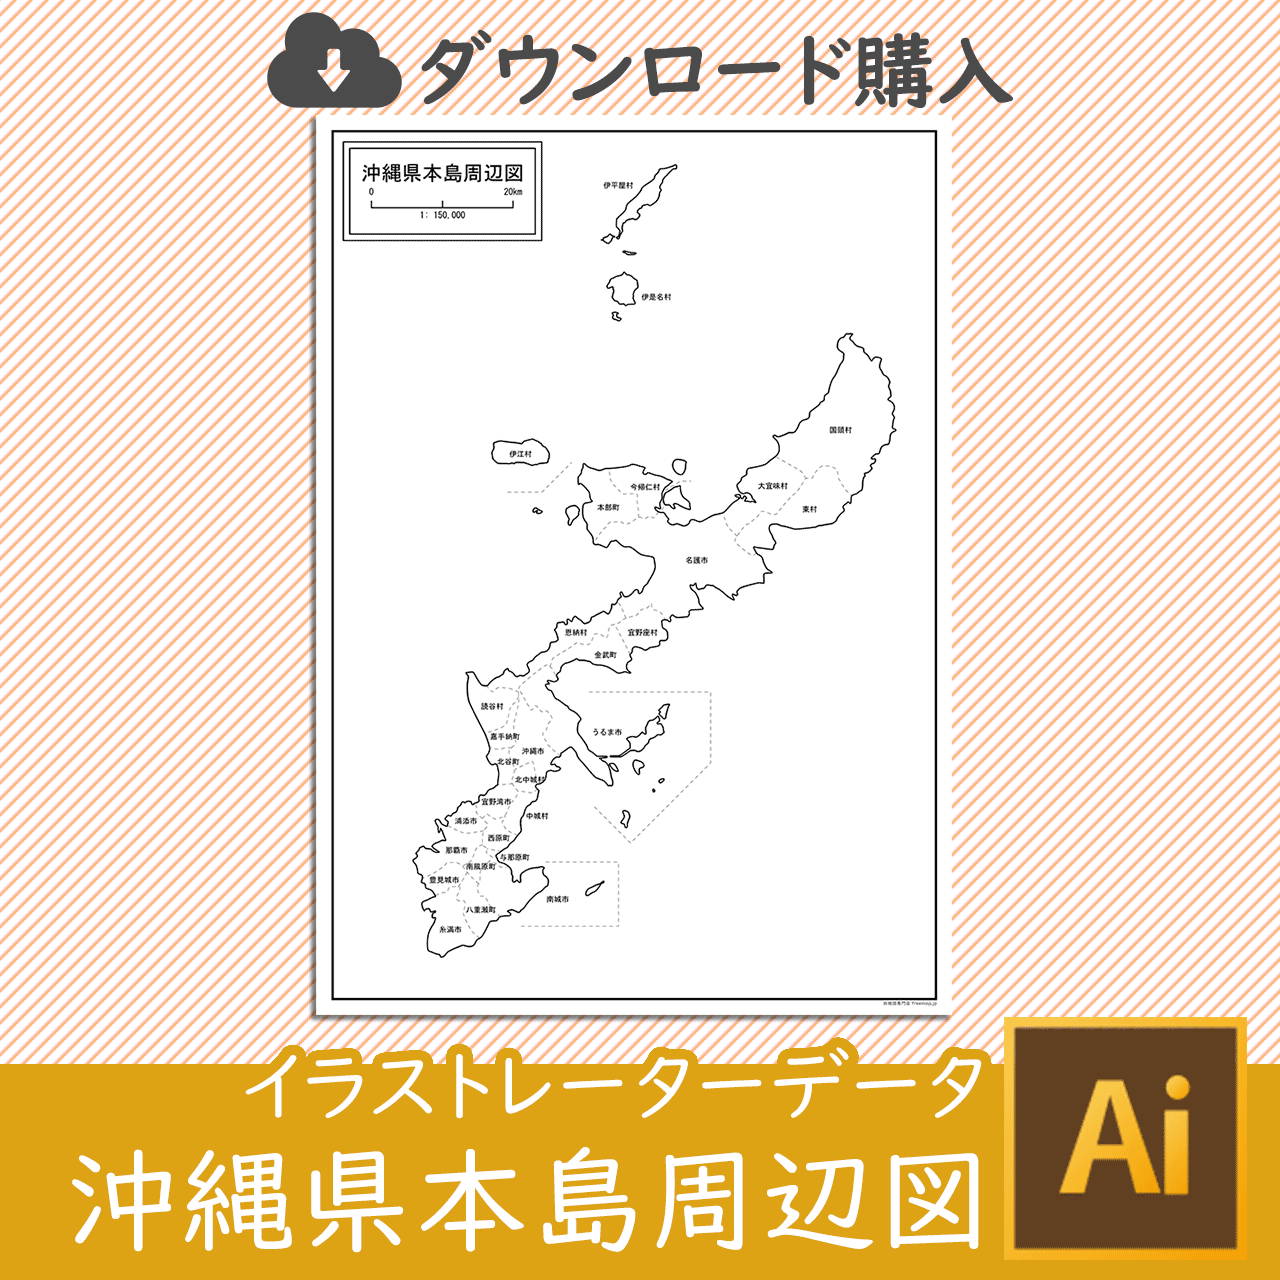 沖縄県本島周辺図のaiデータのサムネイル画像